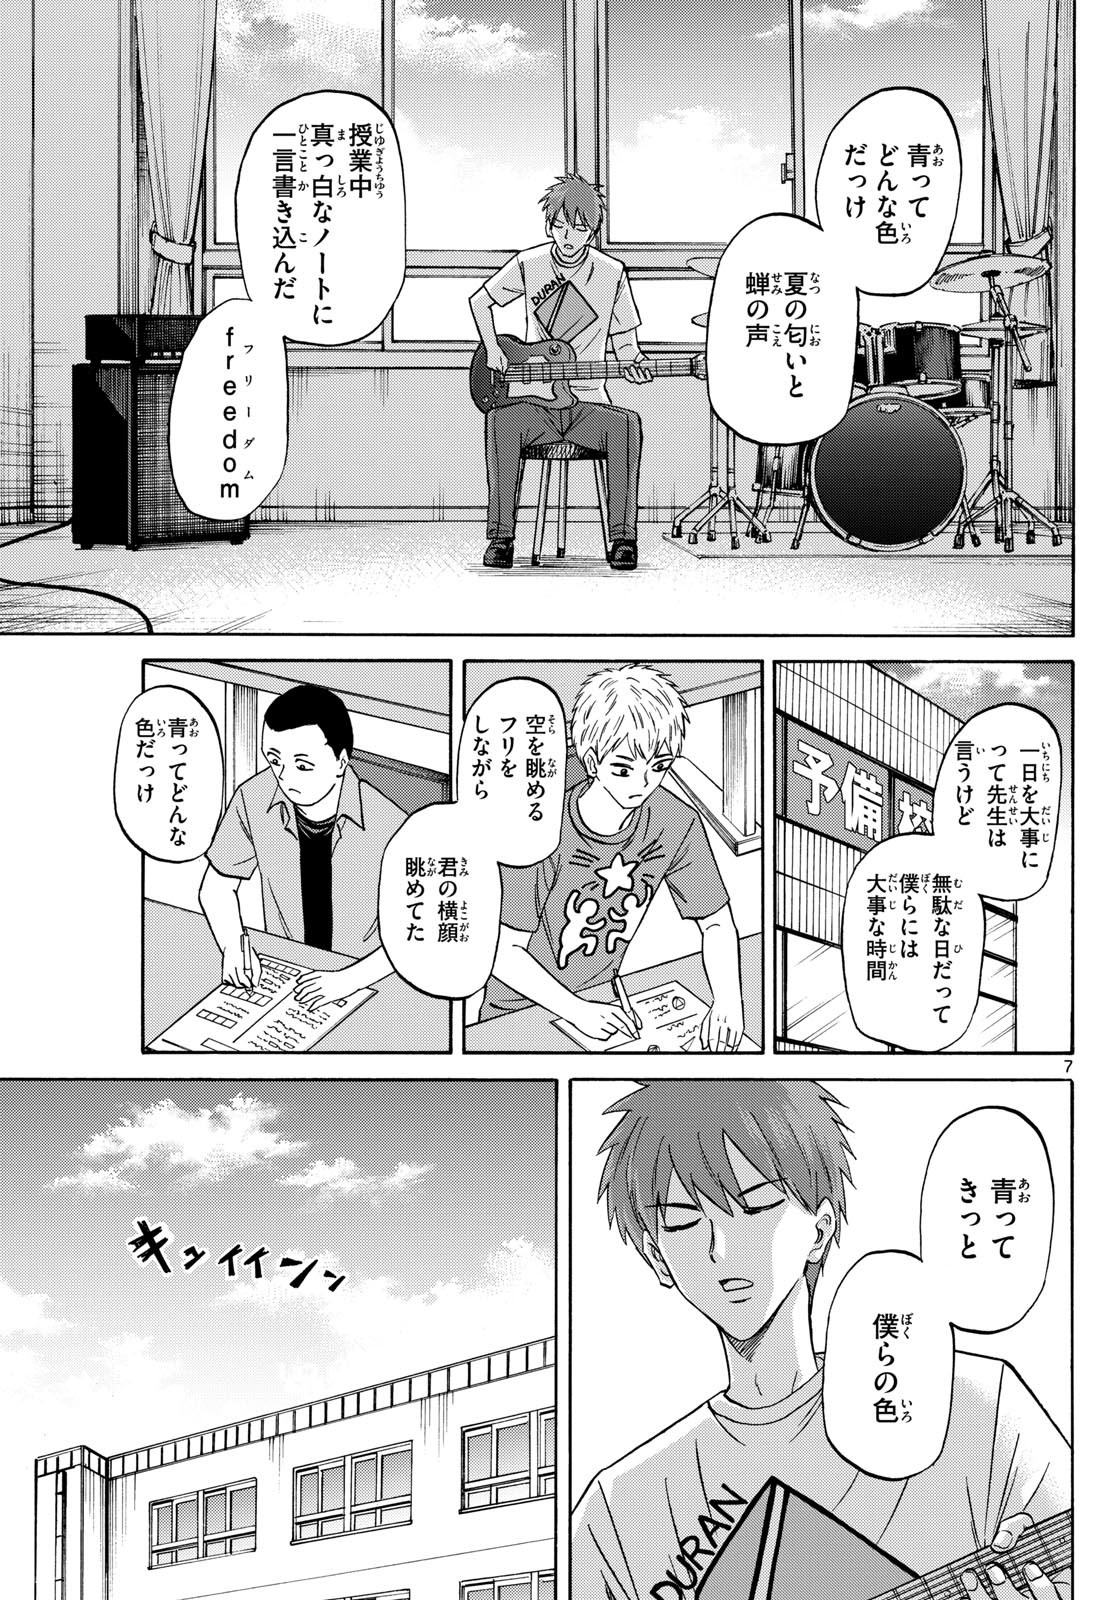 Ryu-to-Ichigo - Chapter 149 - Page 7